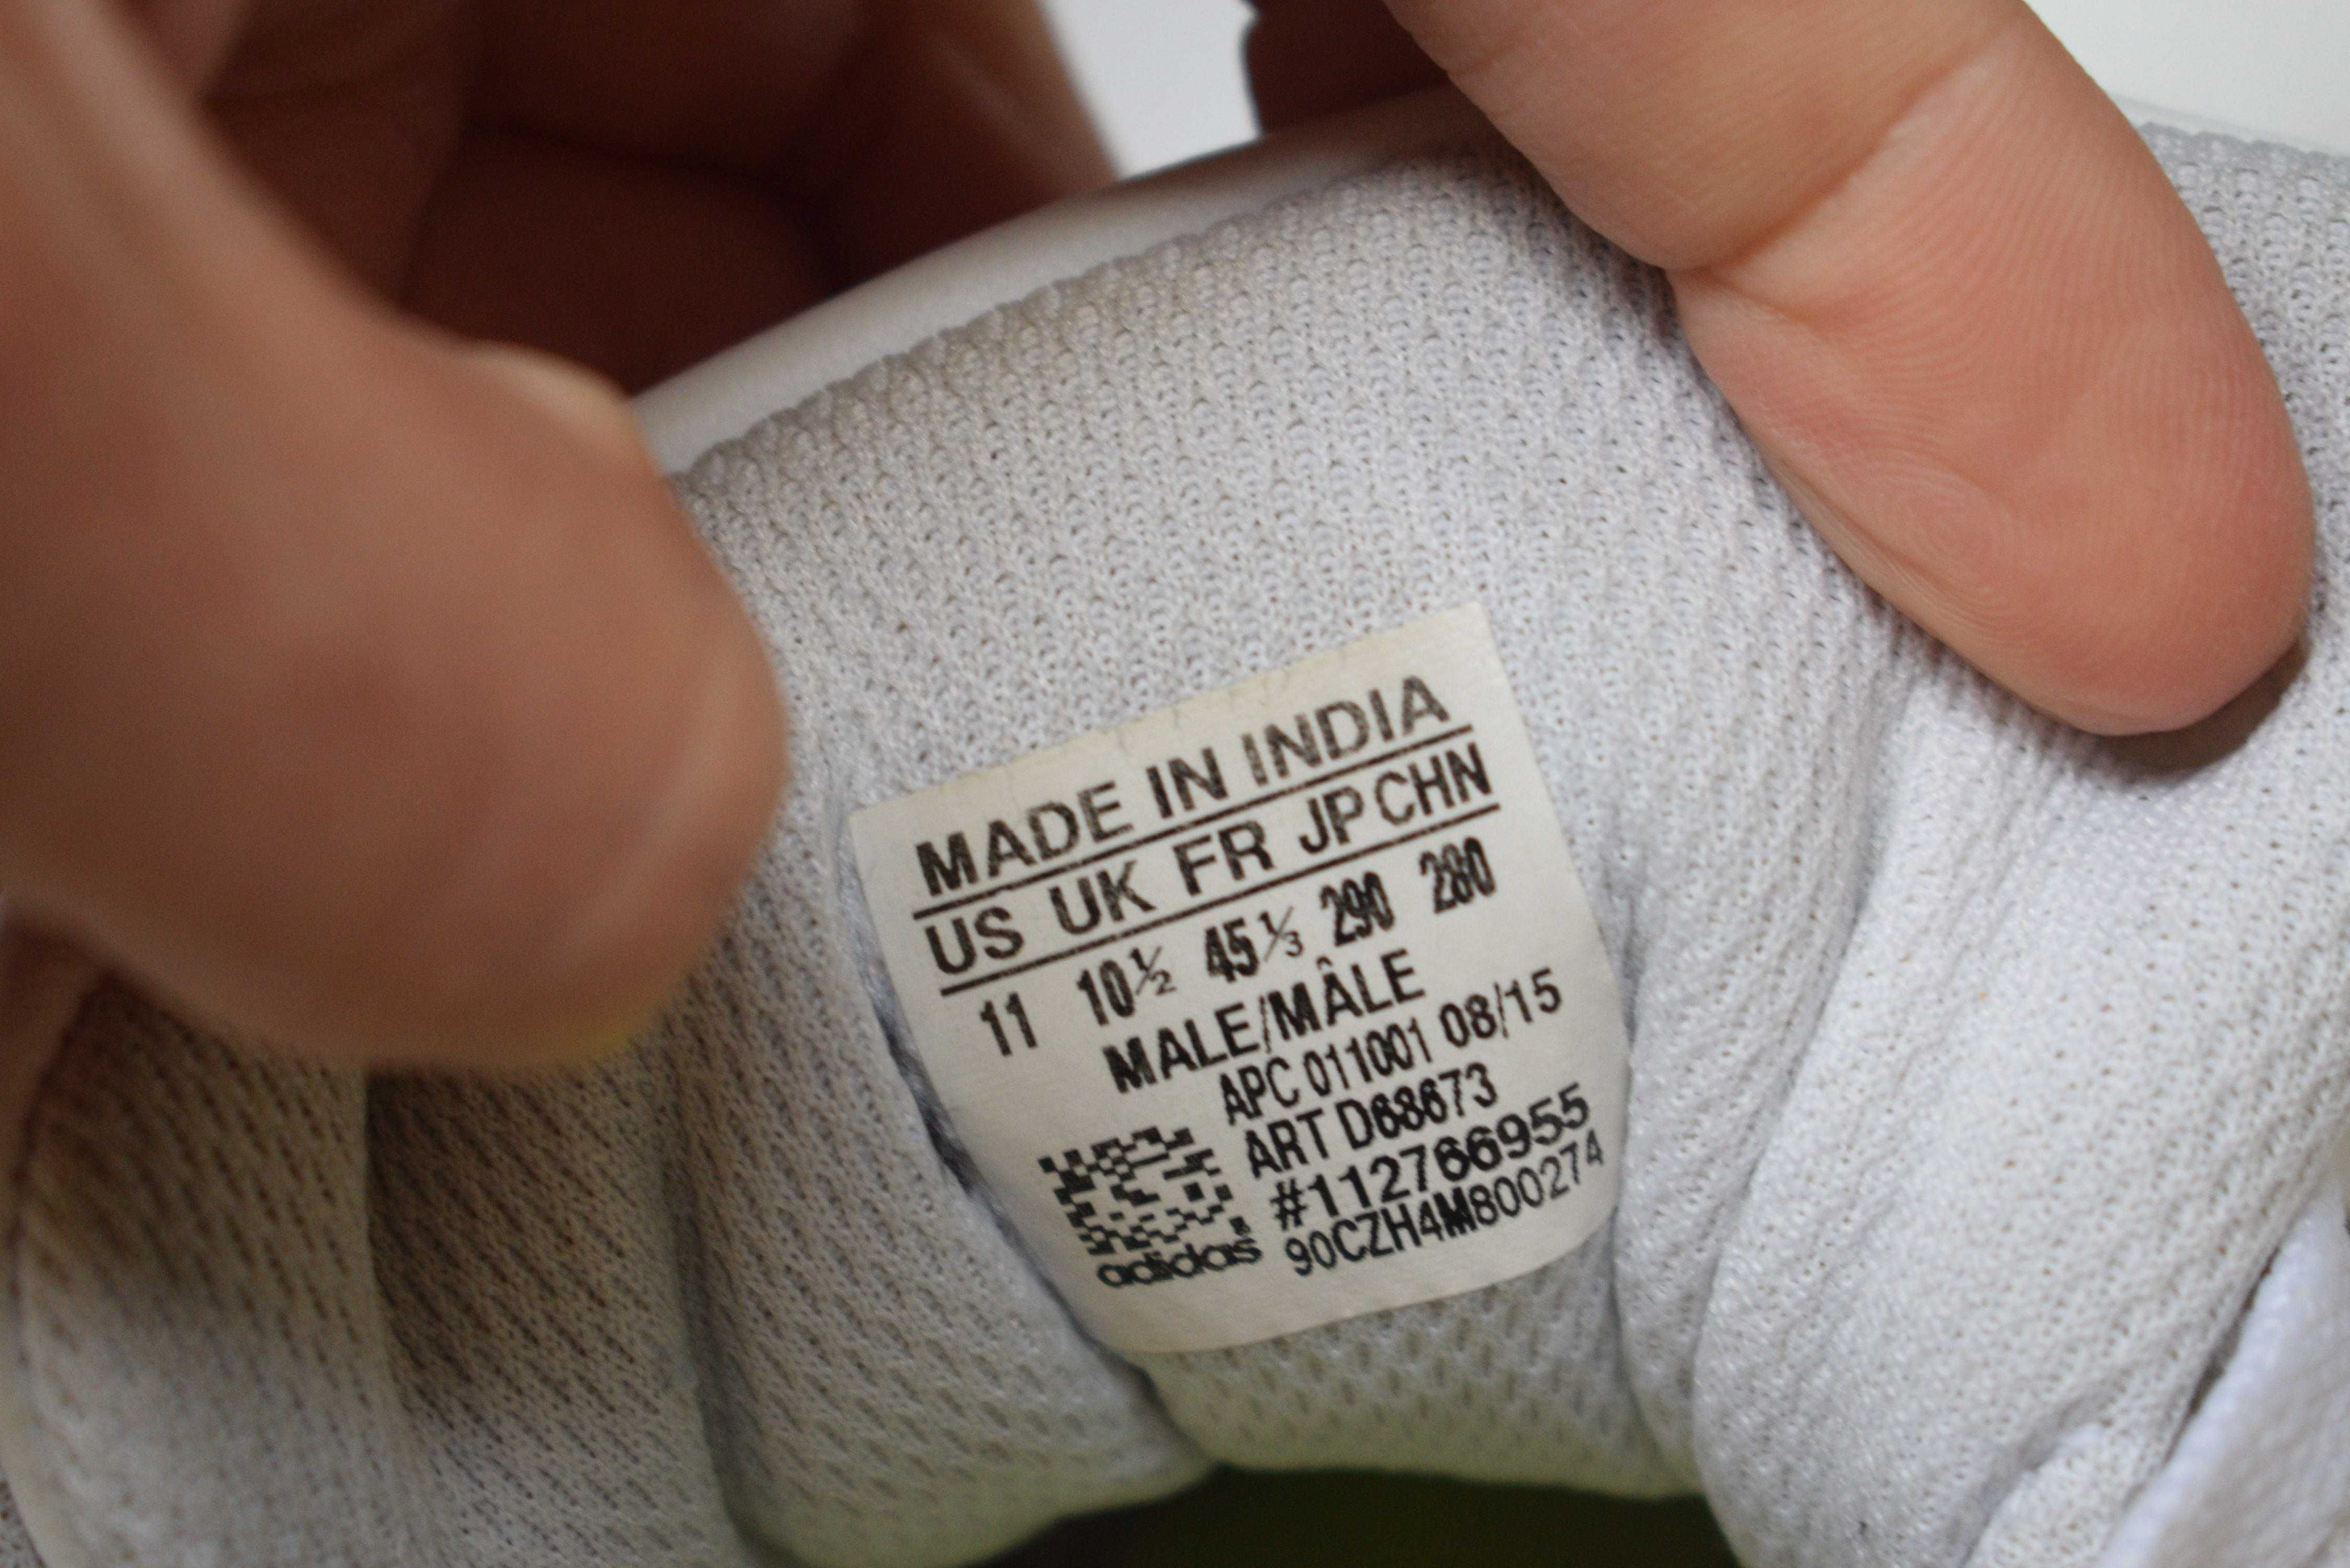 кожаные кеды туфли слипоны мокасины кроссовки деми Adidas р. 45 29 см